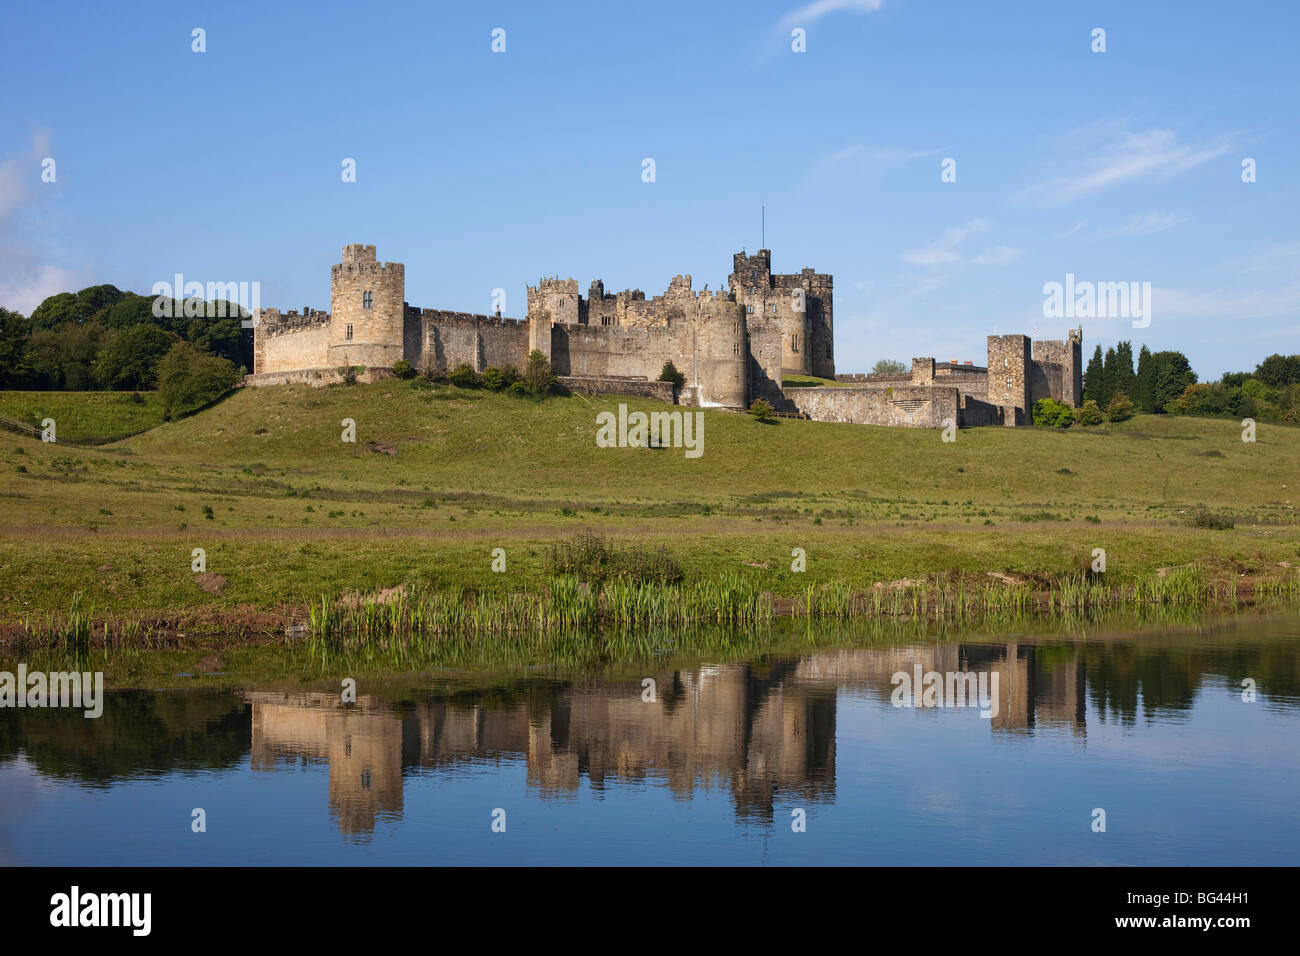 England, Northumberland, Alnwick Castle Stock Photo